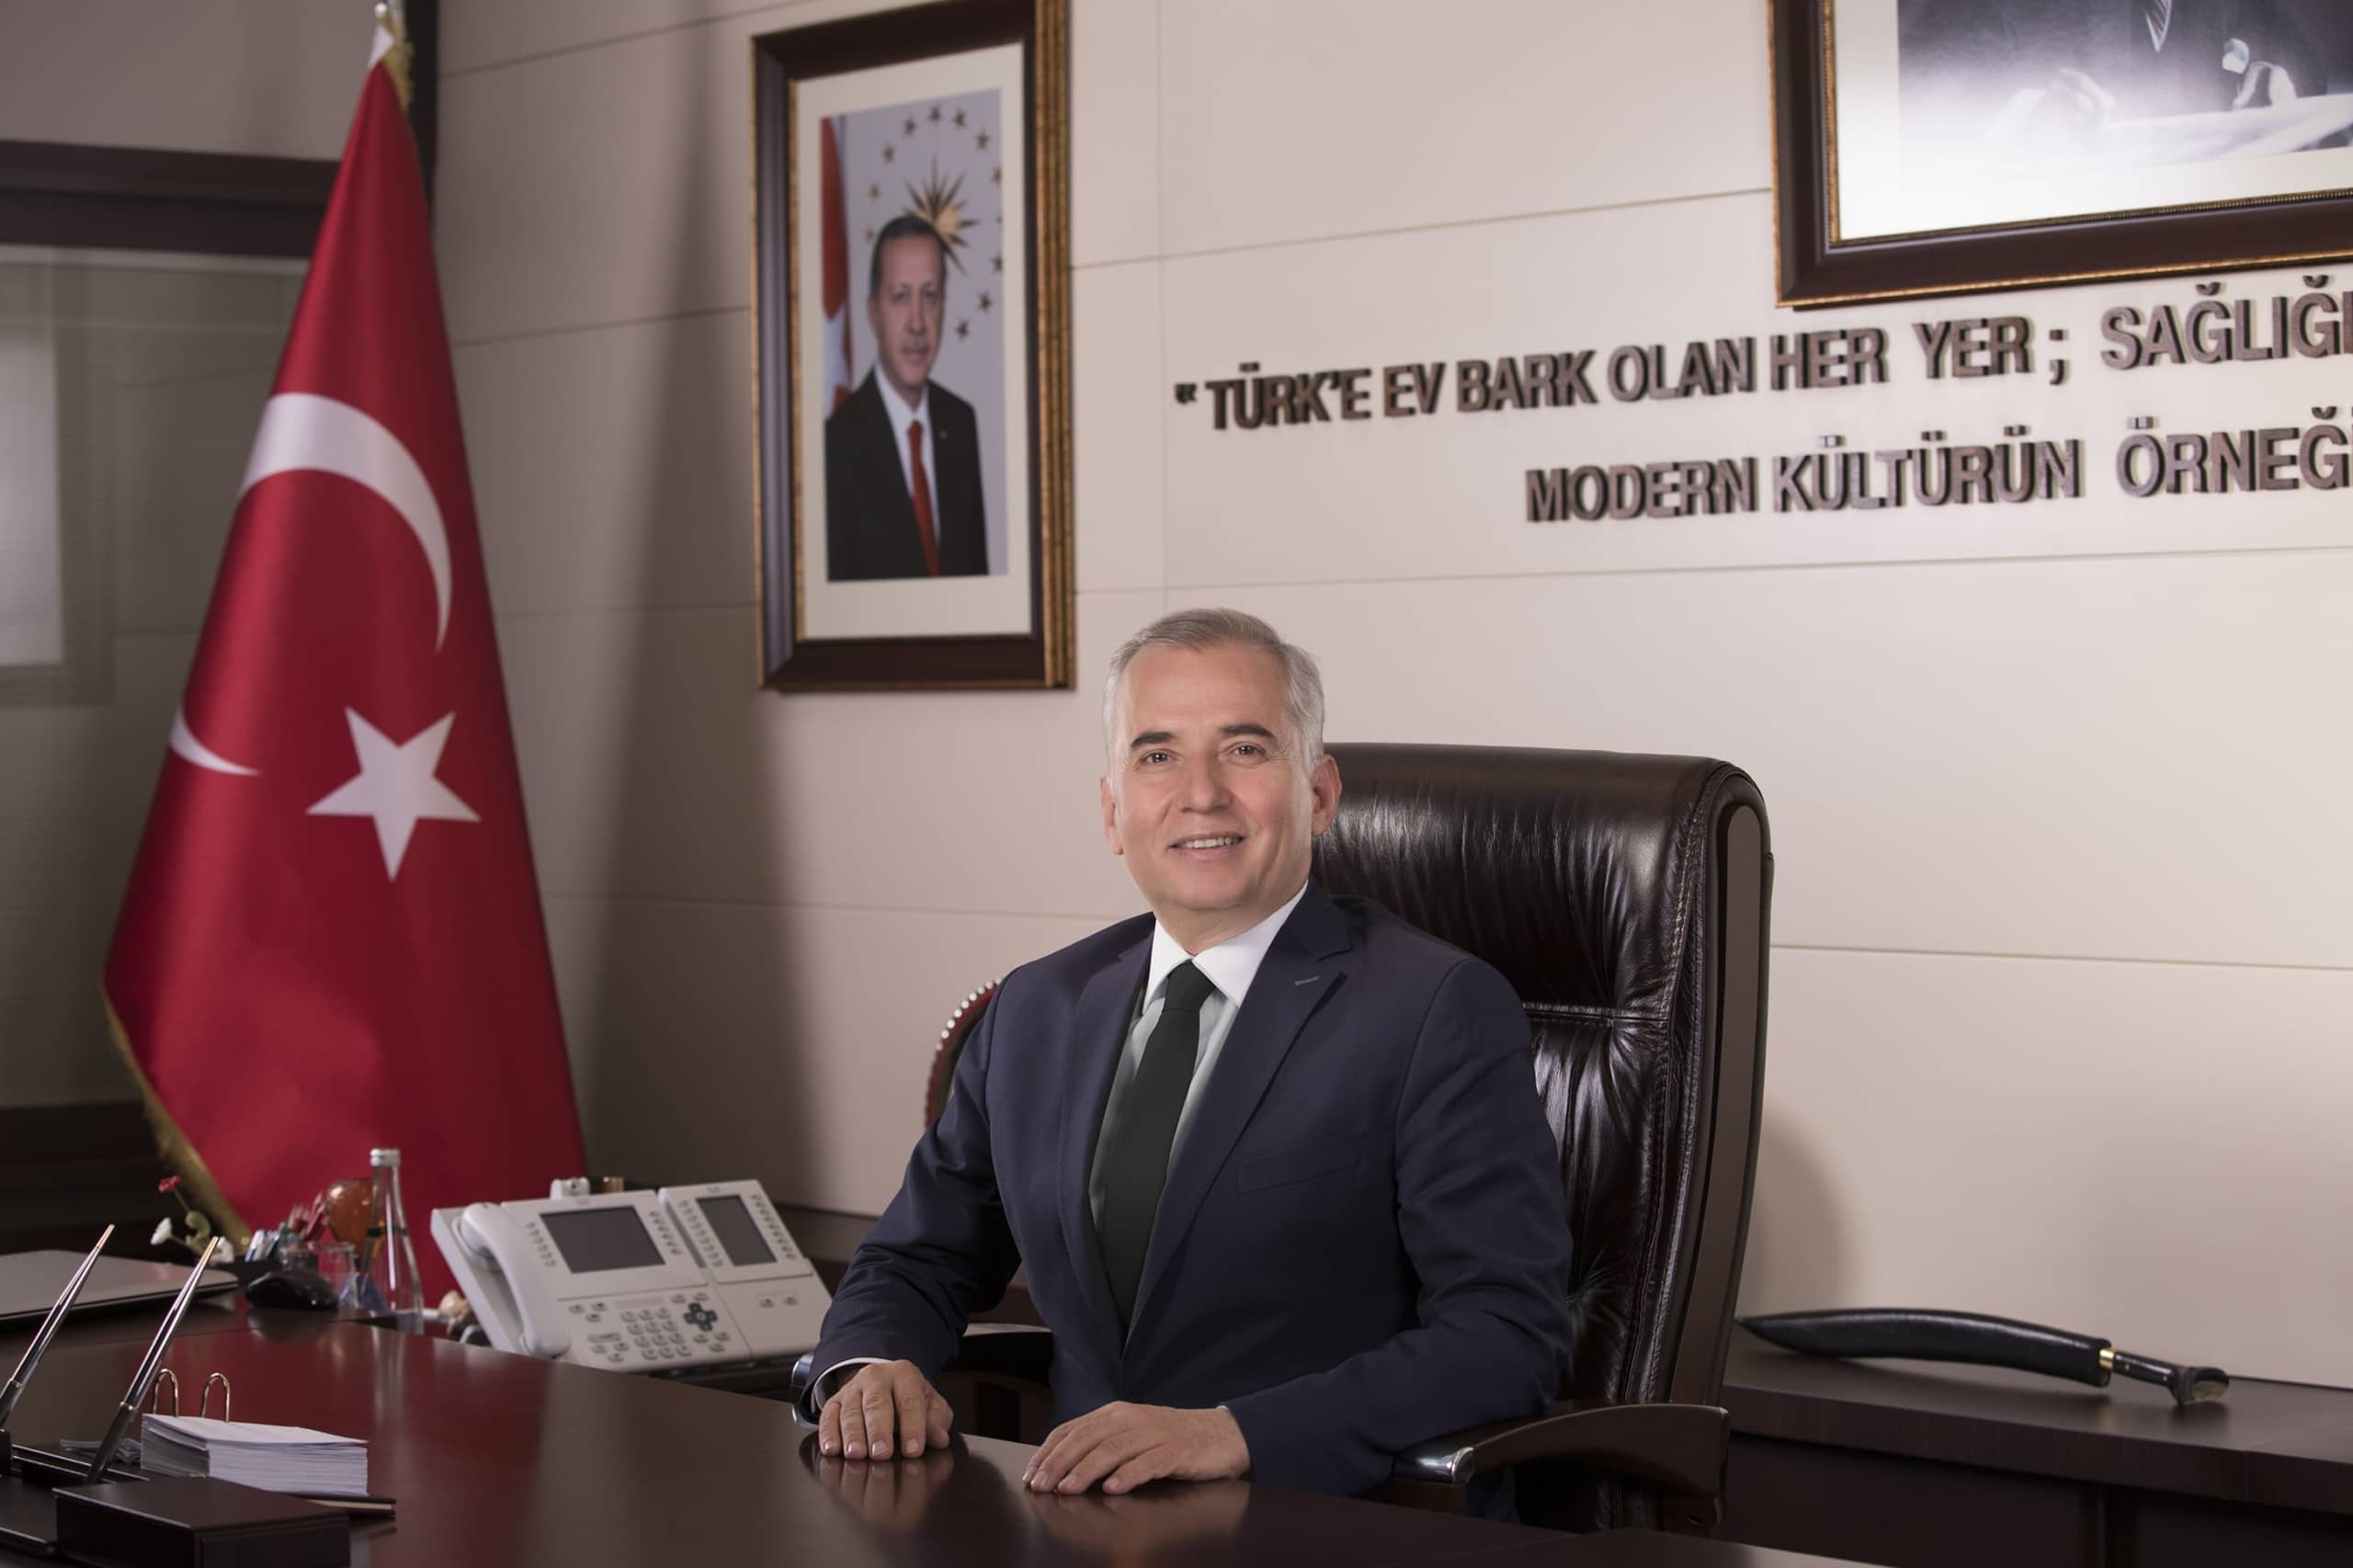 Denizli Buyuksehir Belediye Baskani Osman Zolan scaled - Başkan Zolan’dan Regaip Kandili Mesajı